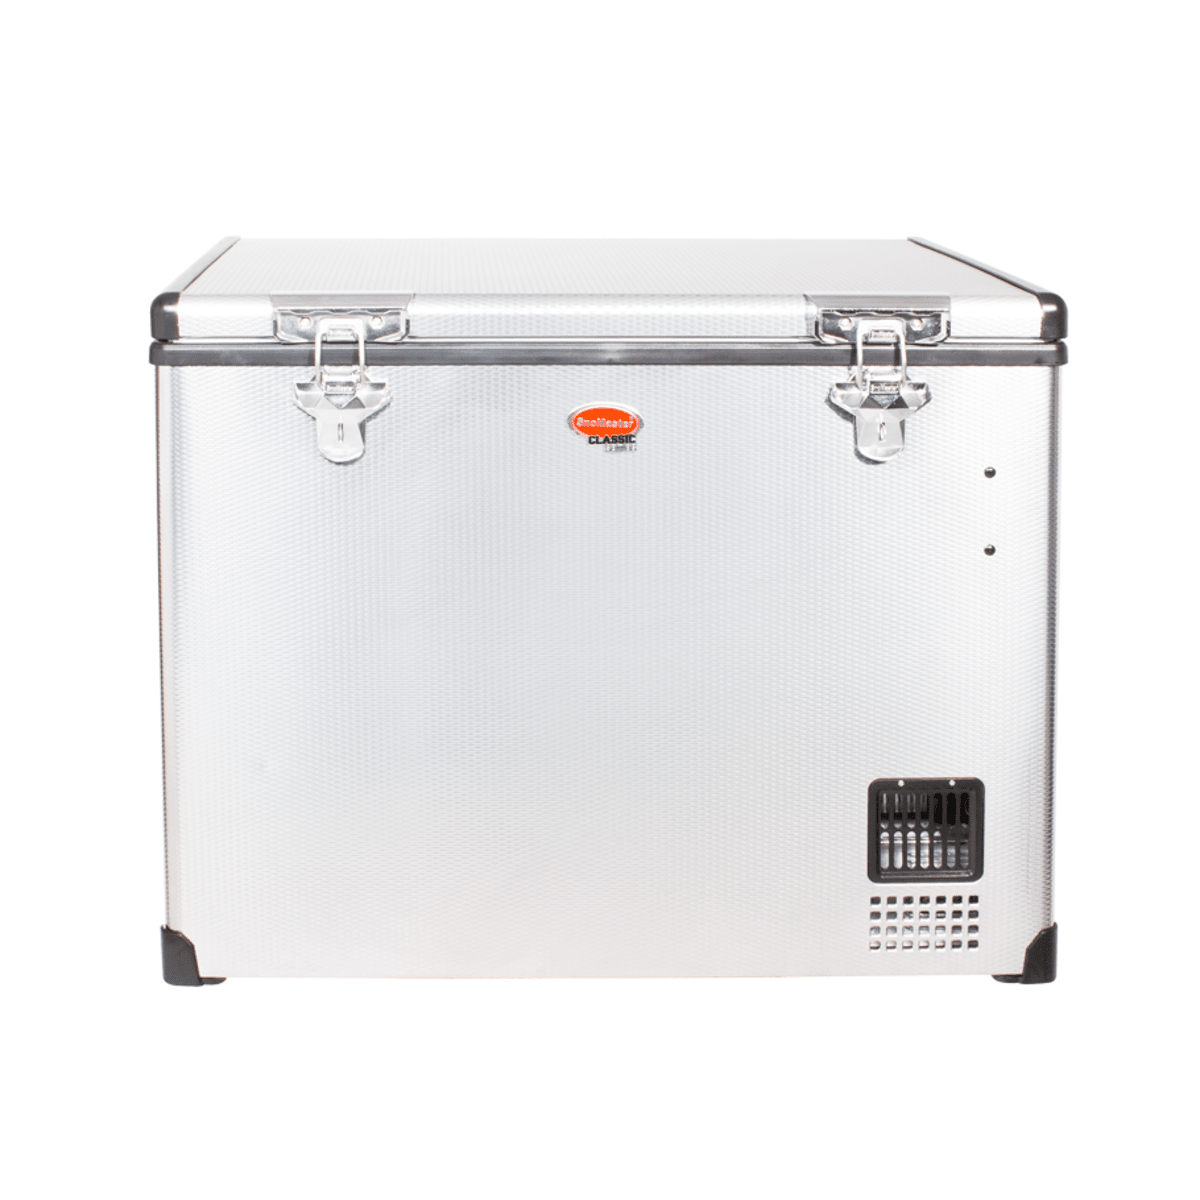 Réfrigérateur congélateur portable à double compartiment SNOMASTER  SMDZ-LP66D • 66 litres • 12v 220v •